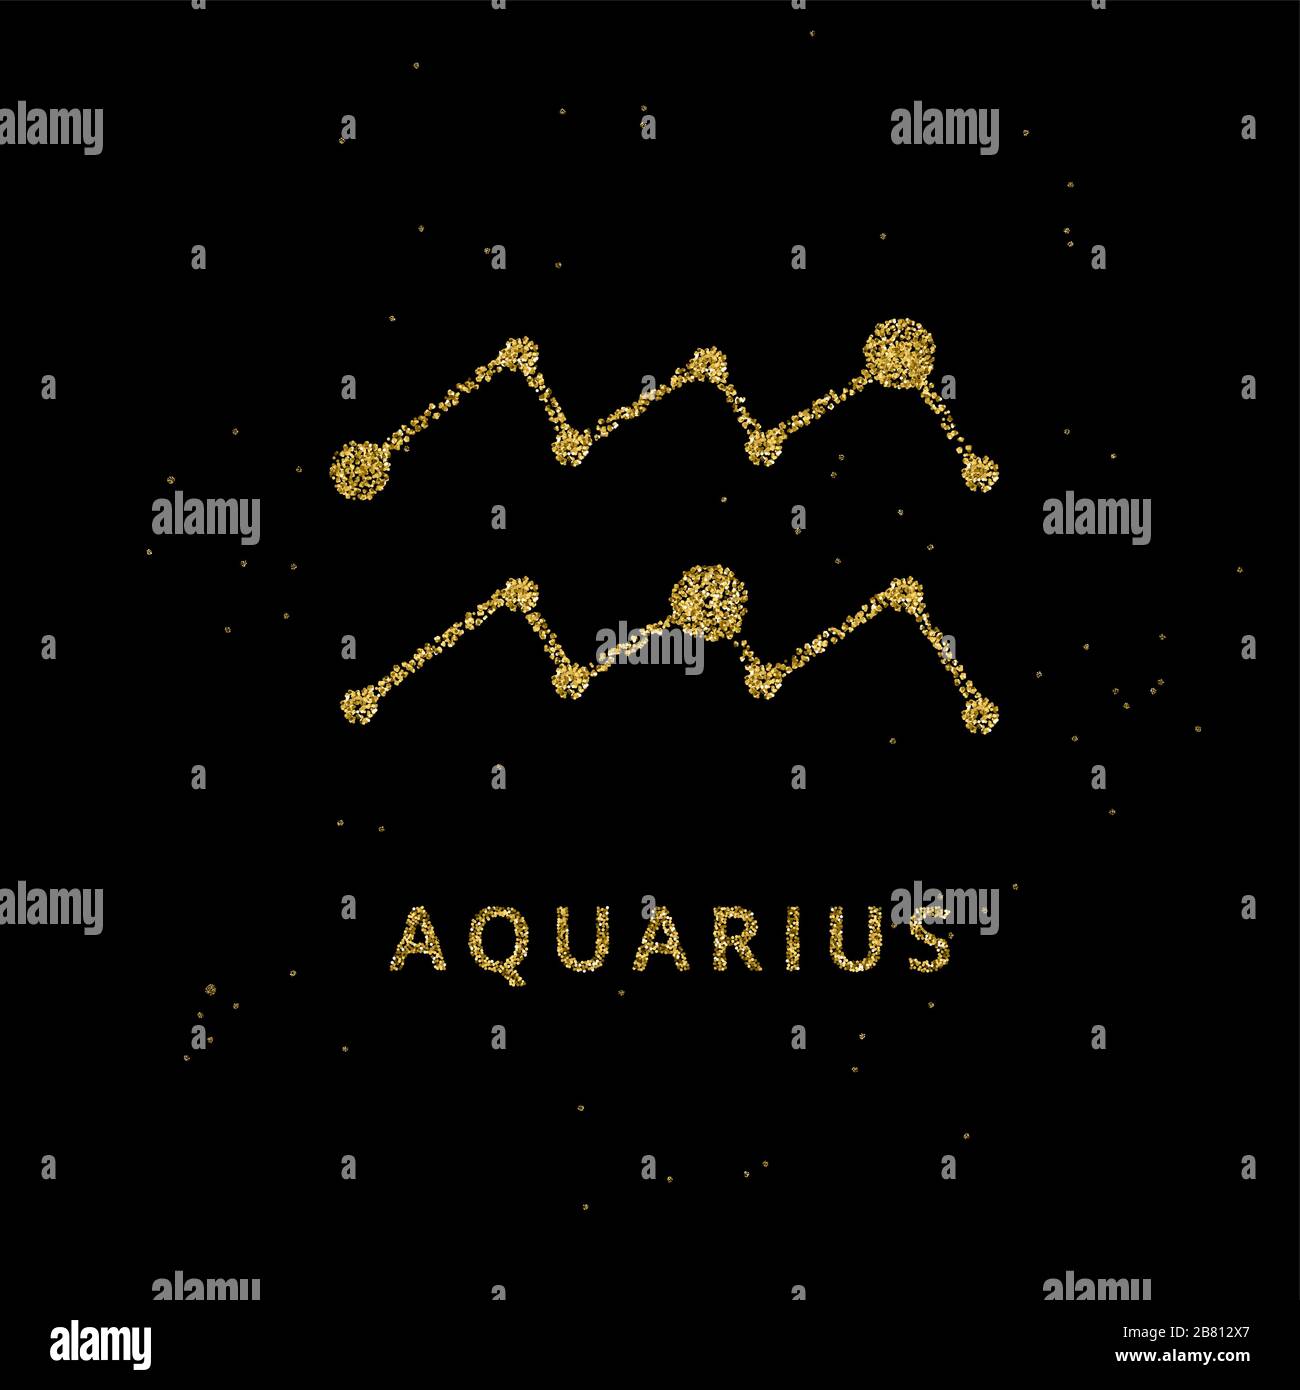 Wassermann Tierkreis-Horoskop-Zeichen, die Astrologie schimbol in goldenem glänzendem glitzernden Stil auf schwarzem Himmelshintergrund. Stock Vektor